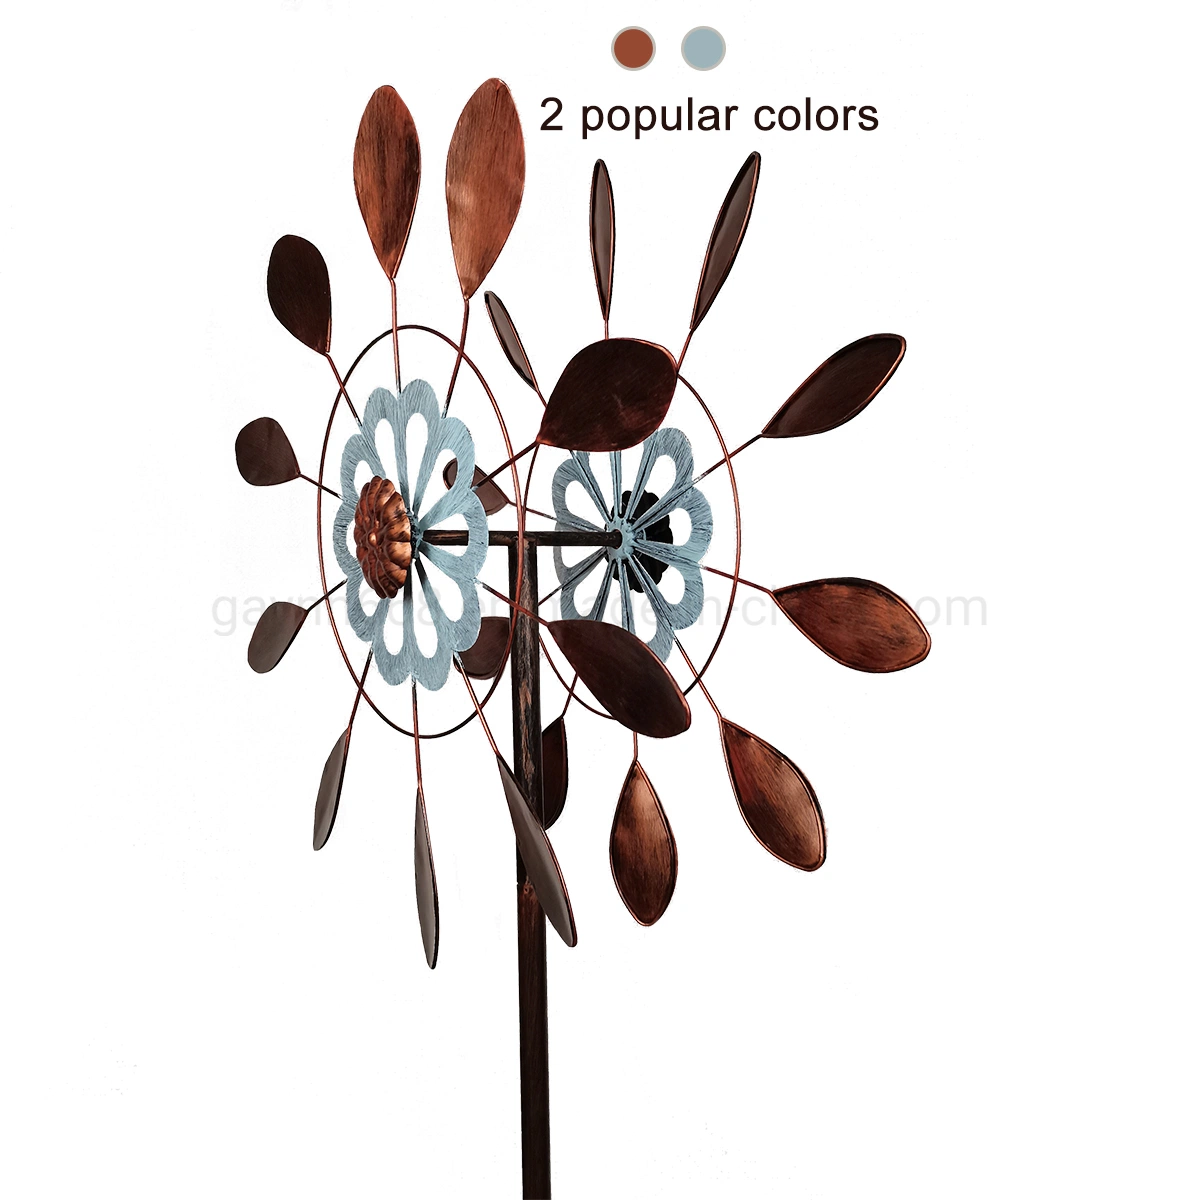 Atractivo Metal Windmill Spinner para la decoración del Jardín con Colores clásicos antiguos de Cobre y Azure en 75 pulgadas de alto